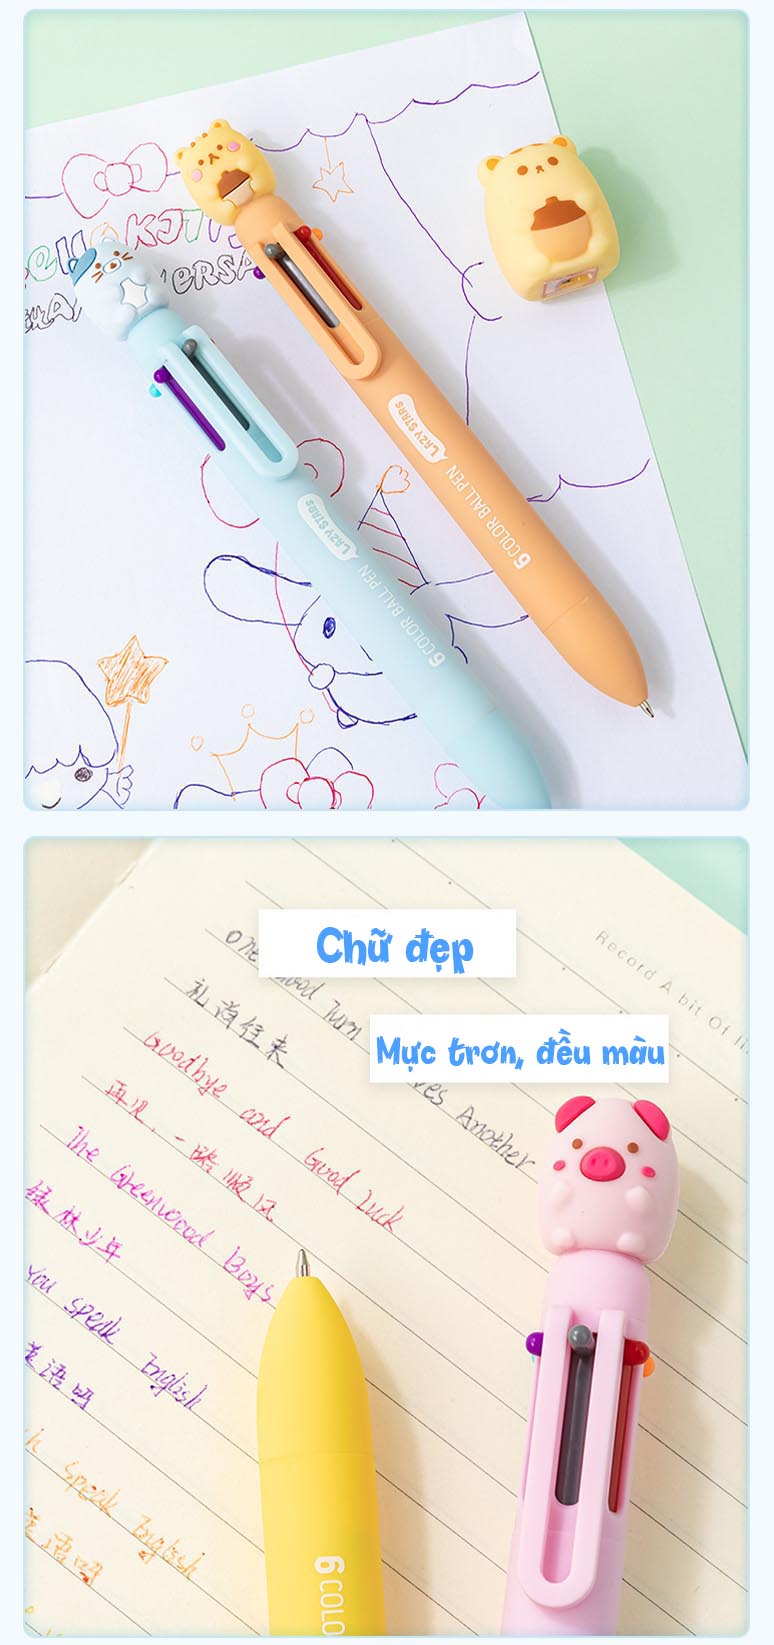 Bút bi 6 màu nhân vật hoạt hình cute tiện lợi cho học sinh, sinh viên, người đi làm